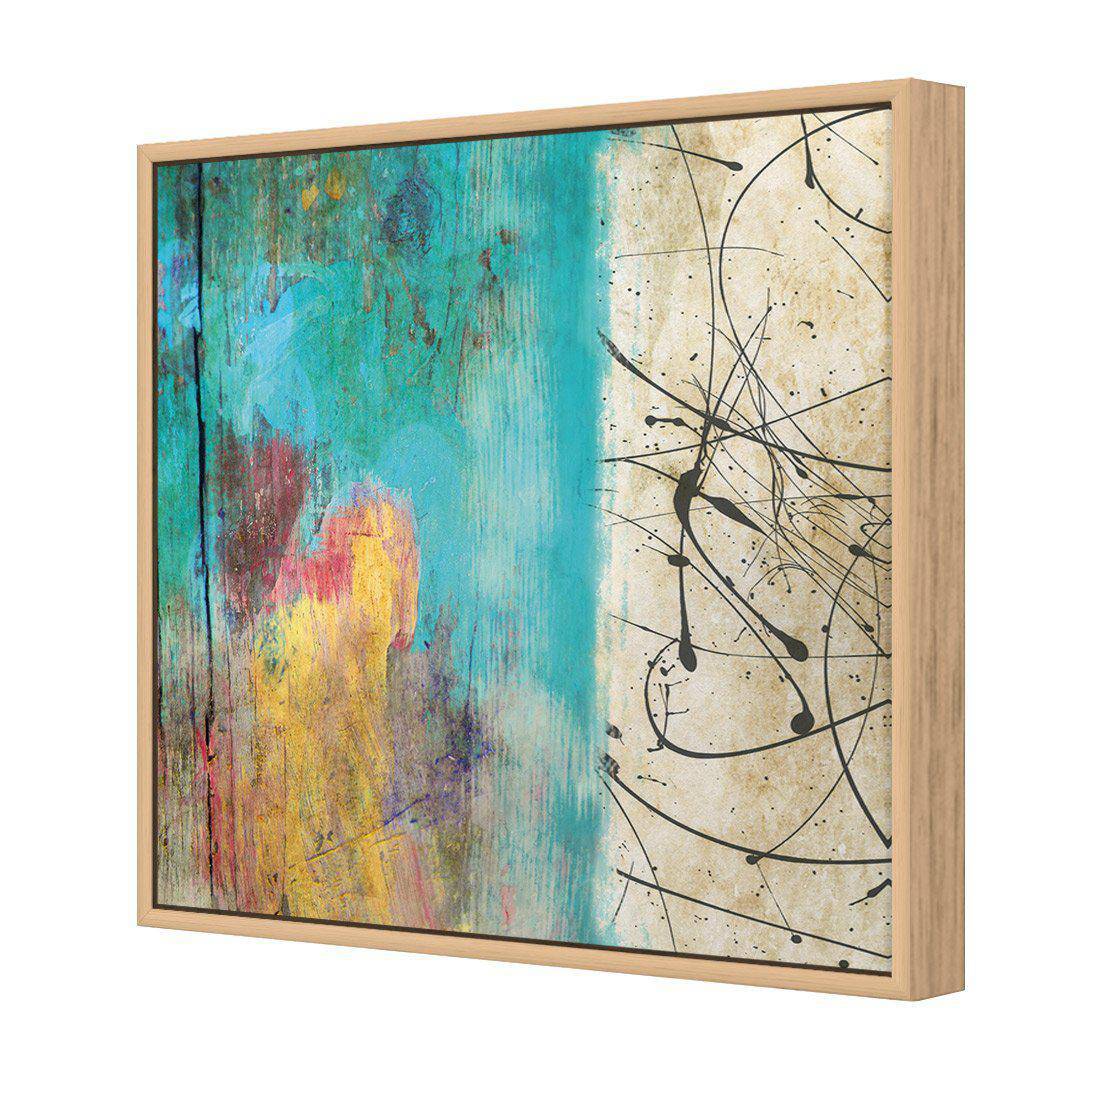 Painted Grunge Splatter Canvas Art-Canvas-Wall Art Designs-30x30cm-Canvas - Oak Frame-Wall Art Designs